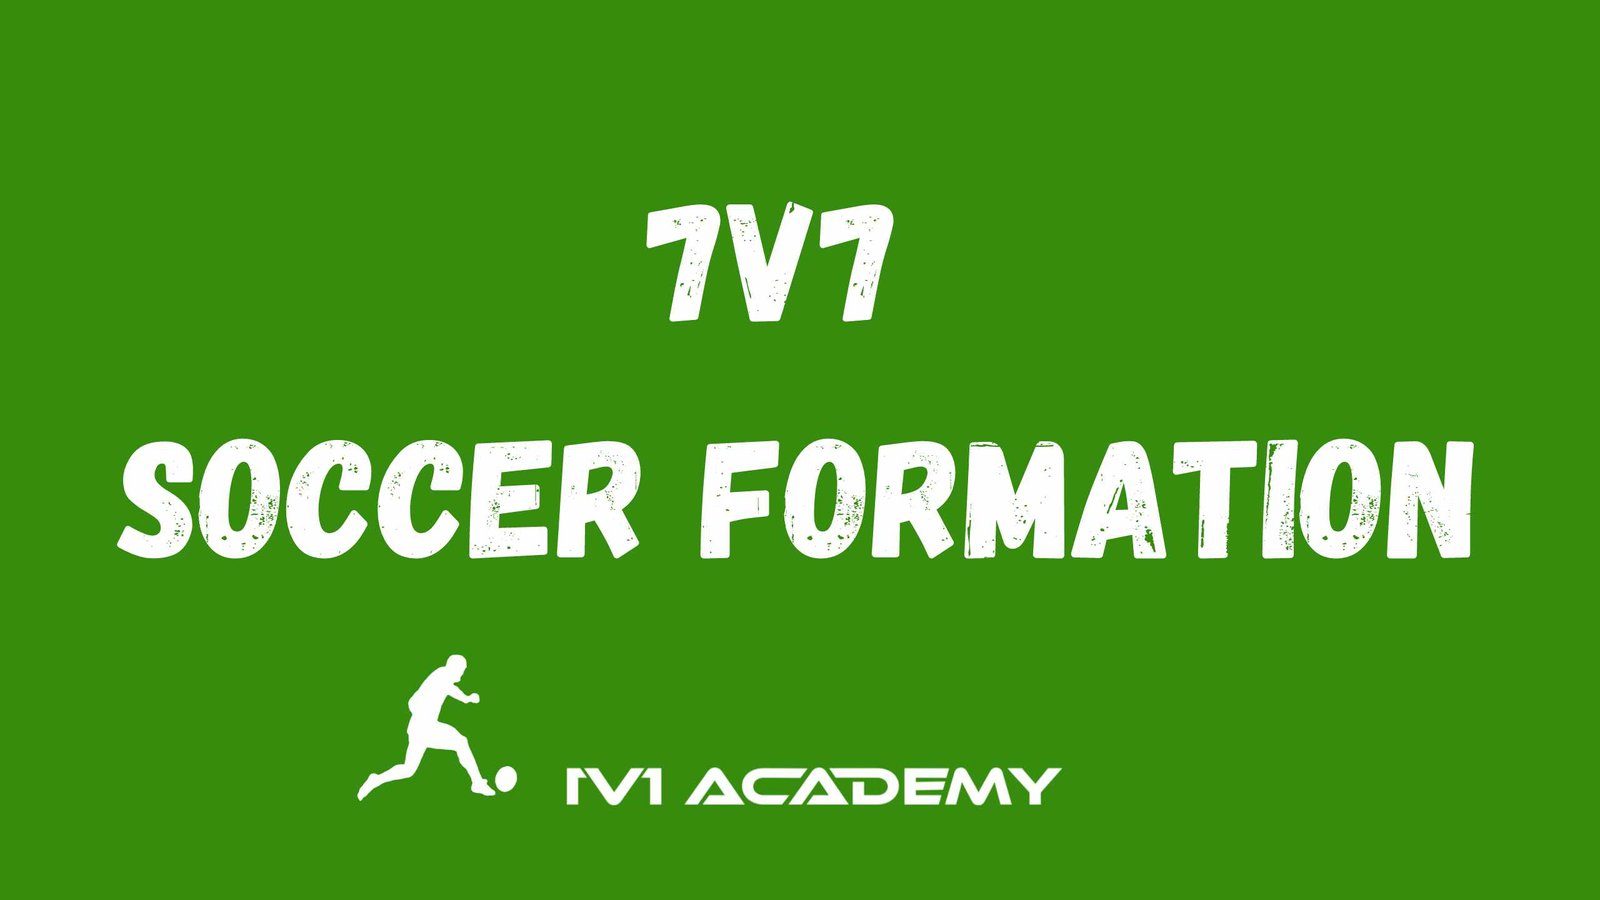 7v7 Soccer Formations